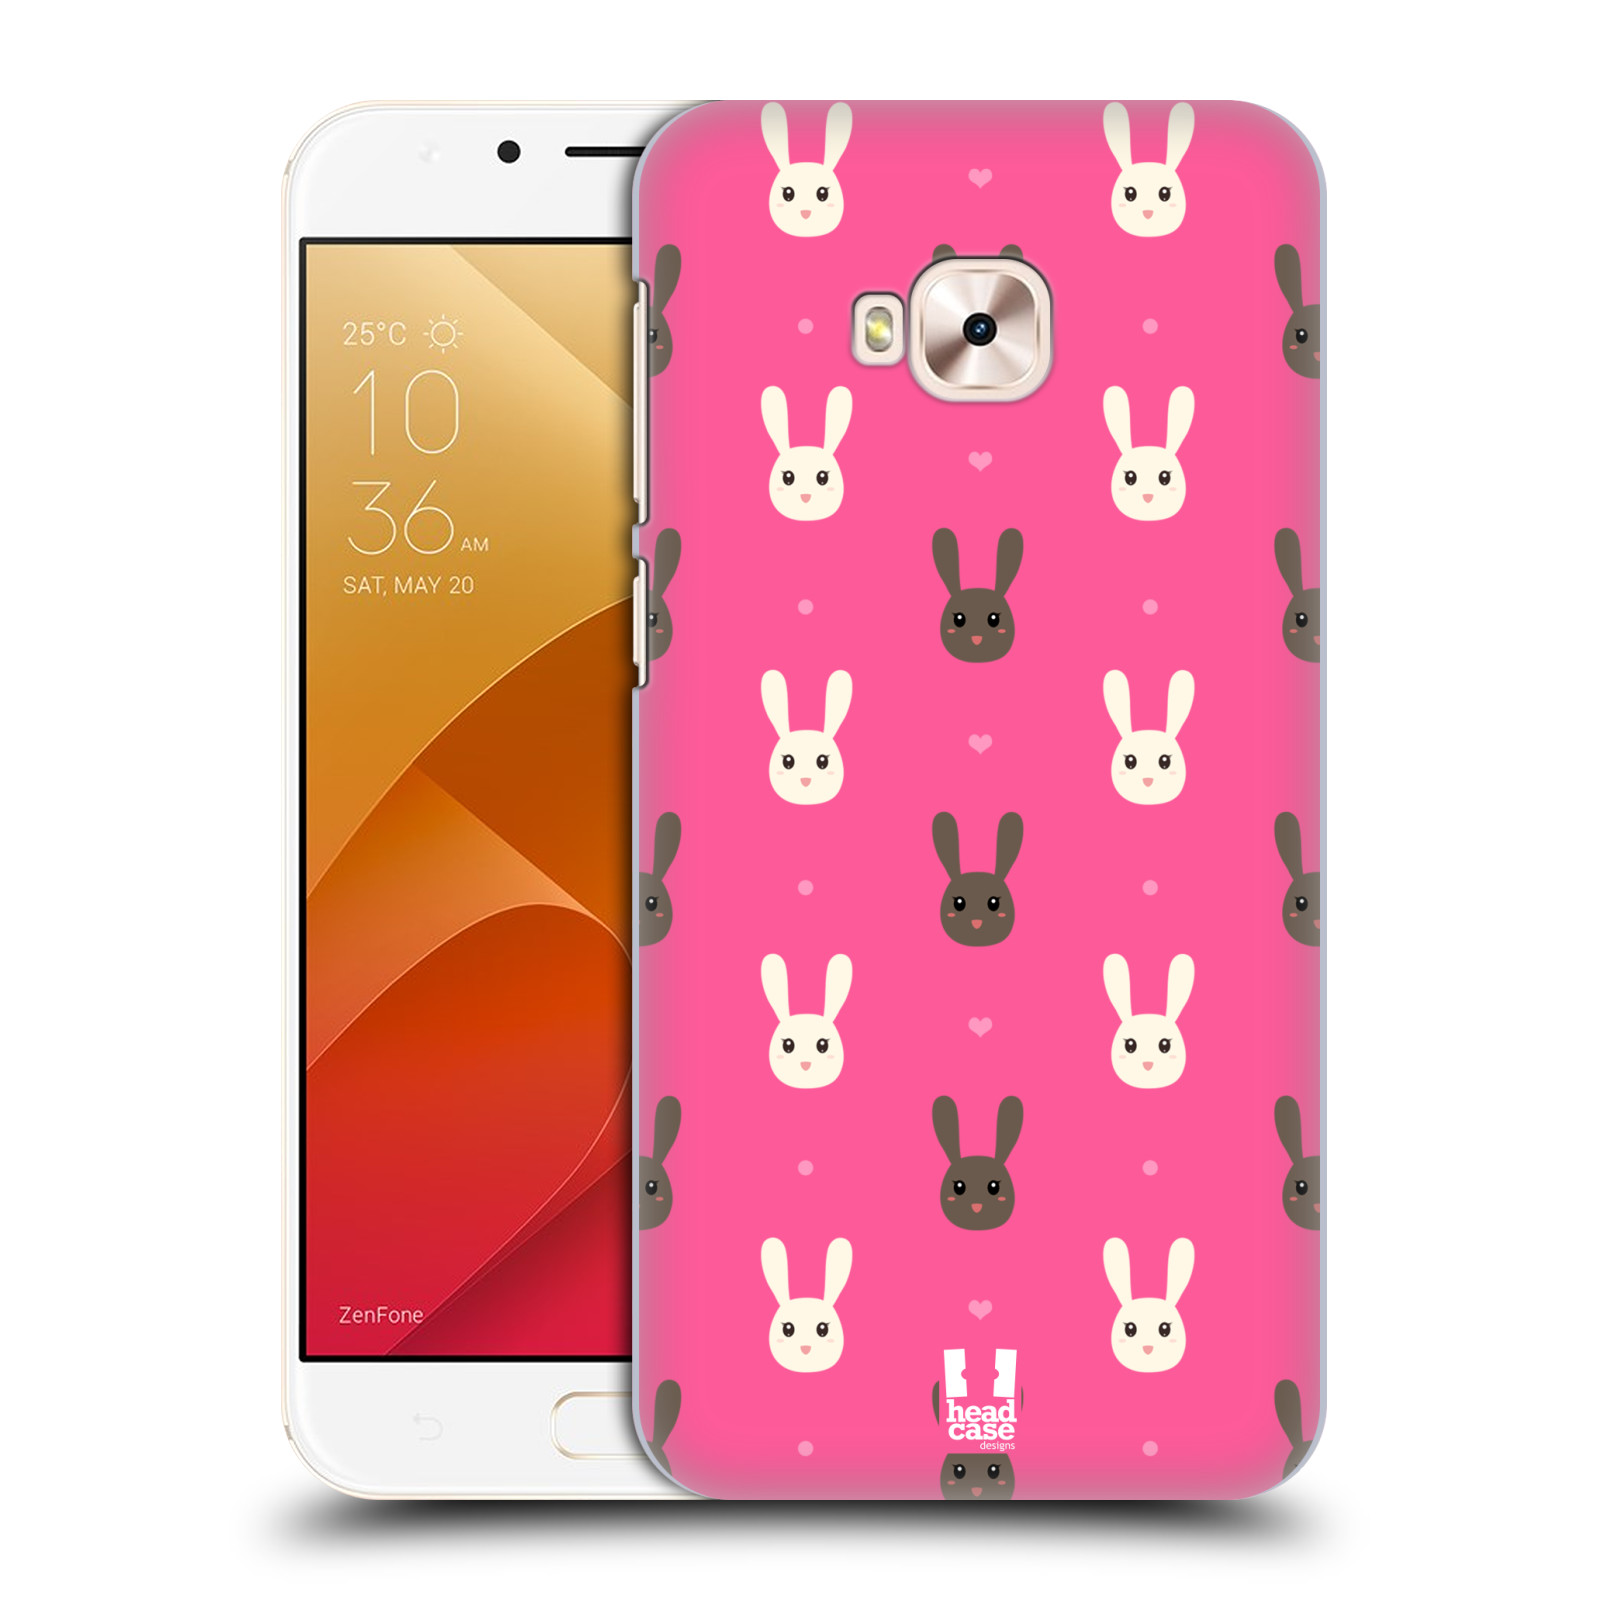 HEAD CASE plastový obal na mobil Asus Zenfone 4 Selfie Pro ZD552KL vzor Barevní zajíčci RŮŽOVÁ hnědý a bílý králíček